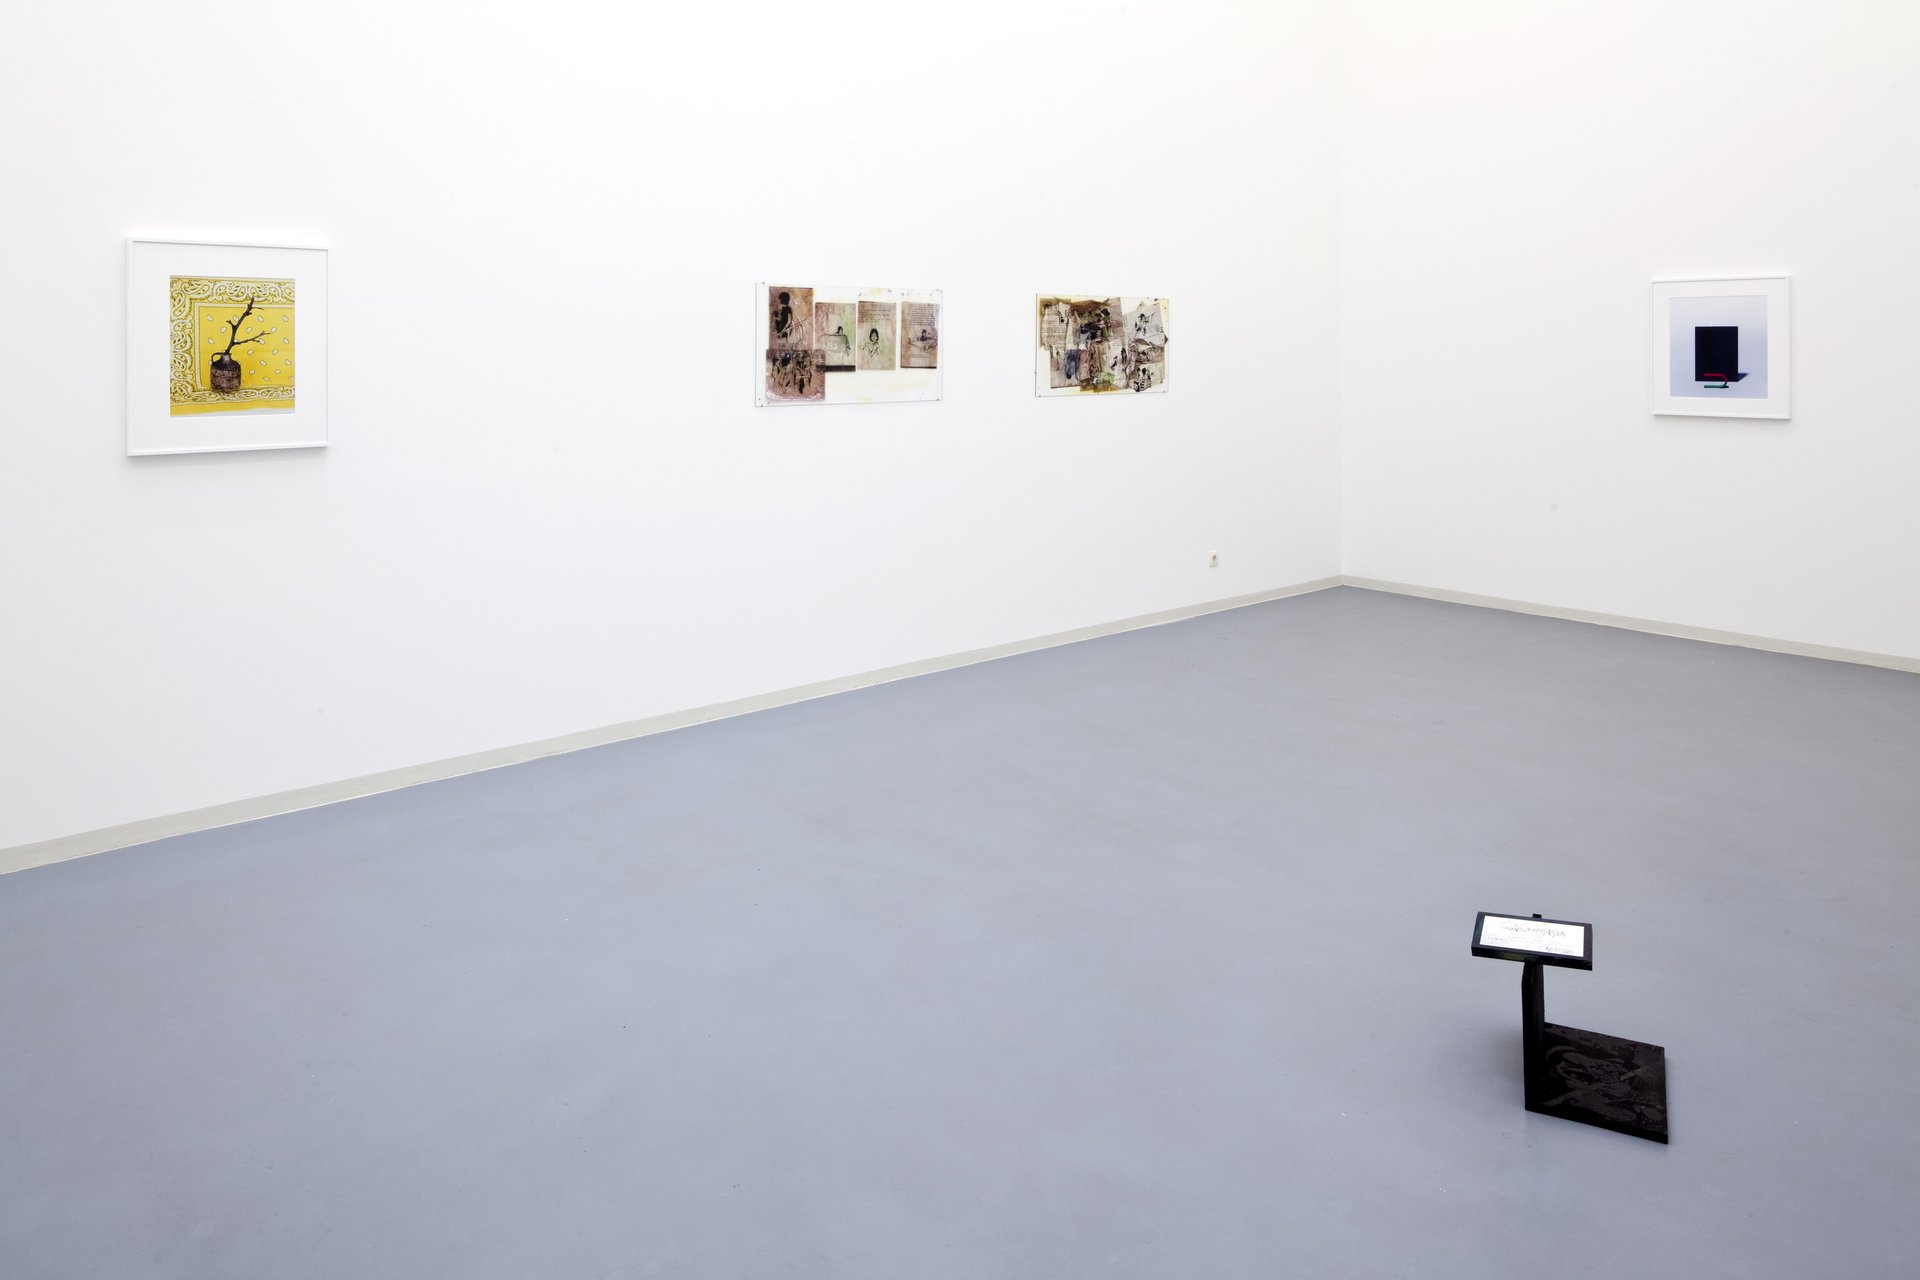 Annette Kelm &amp; Michaela Meise, Hallo aber, Installation view, Bonner Kunstverein, 2011. Photo: Simon Vogel.